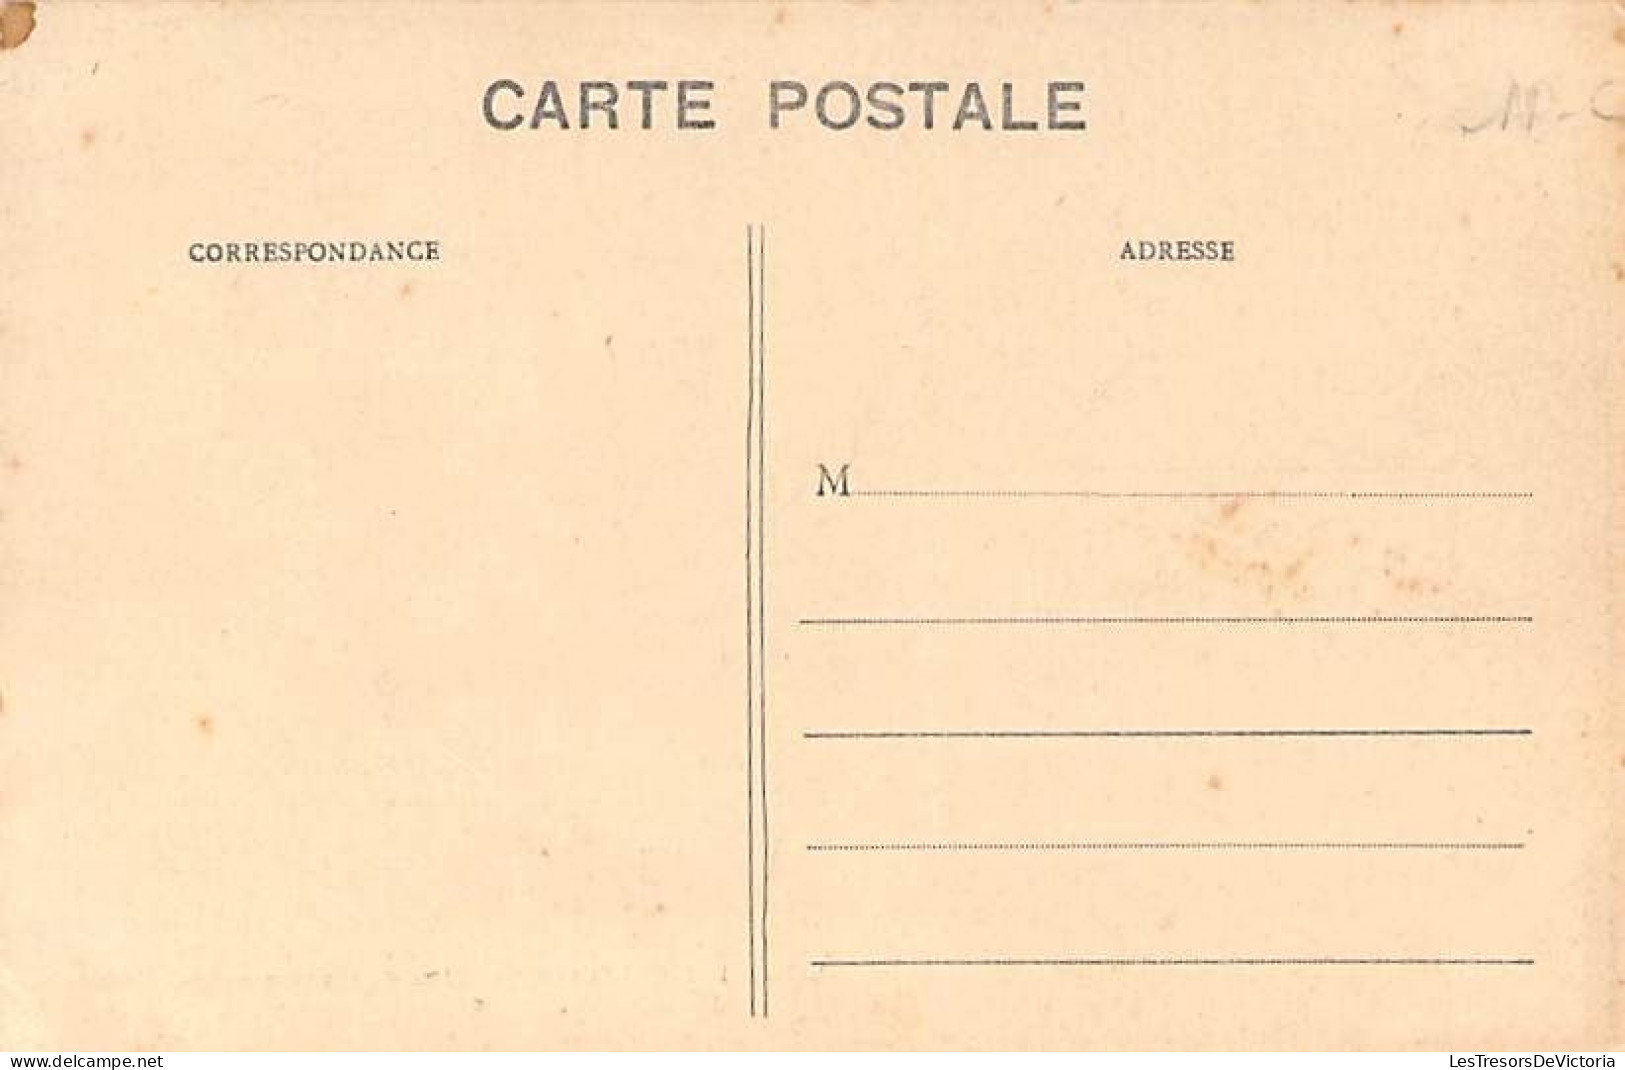 Nouvelle Calédonie - Fêtes De Cinquantenaire - Cavalcade - Animé - Carte Postale Ancienne - New Caledonia